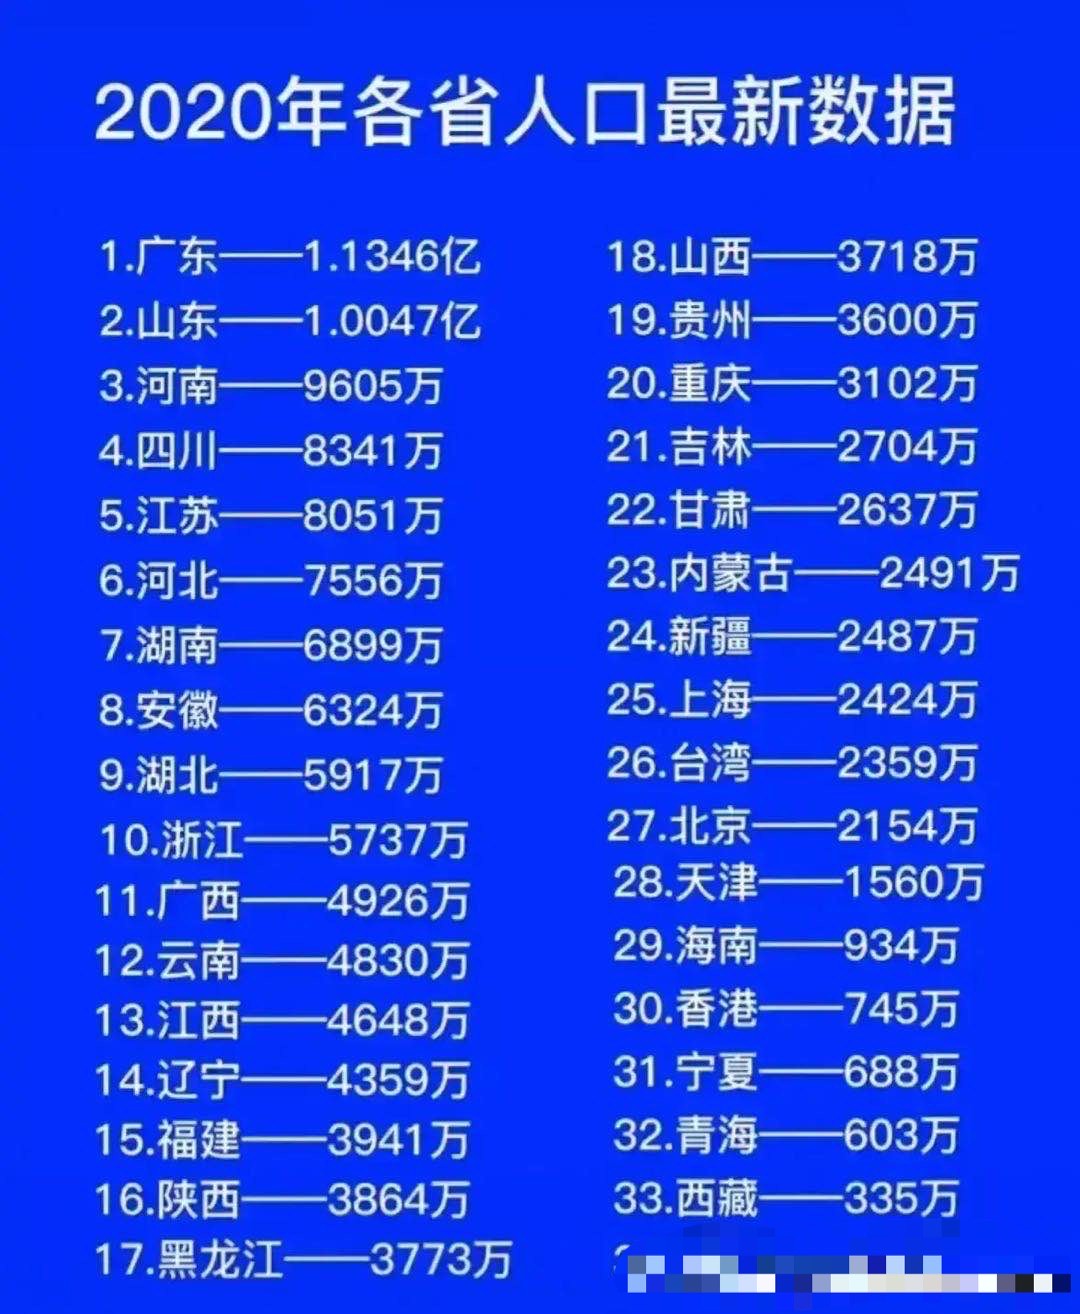 2020年各省常住人口:广东山东超过1亿,上海多于台湾